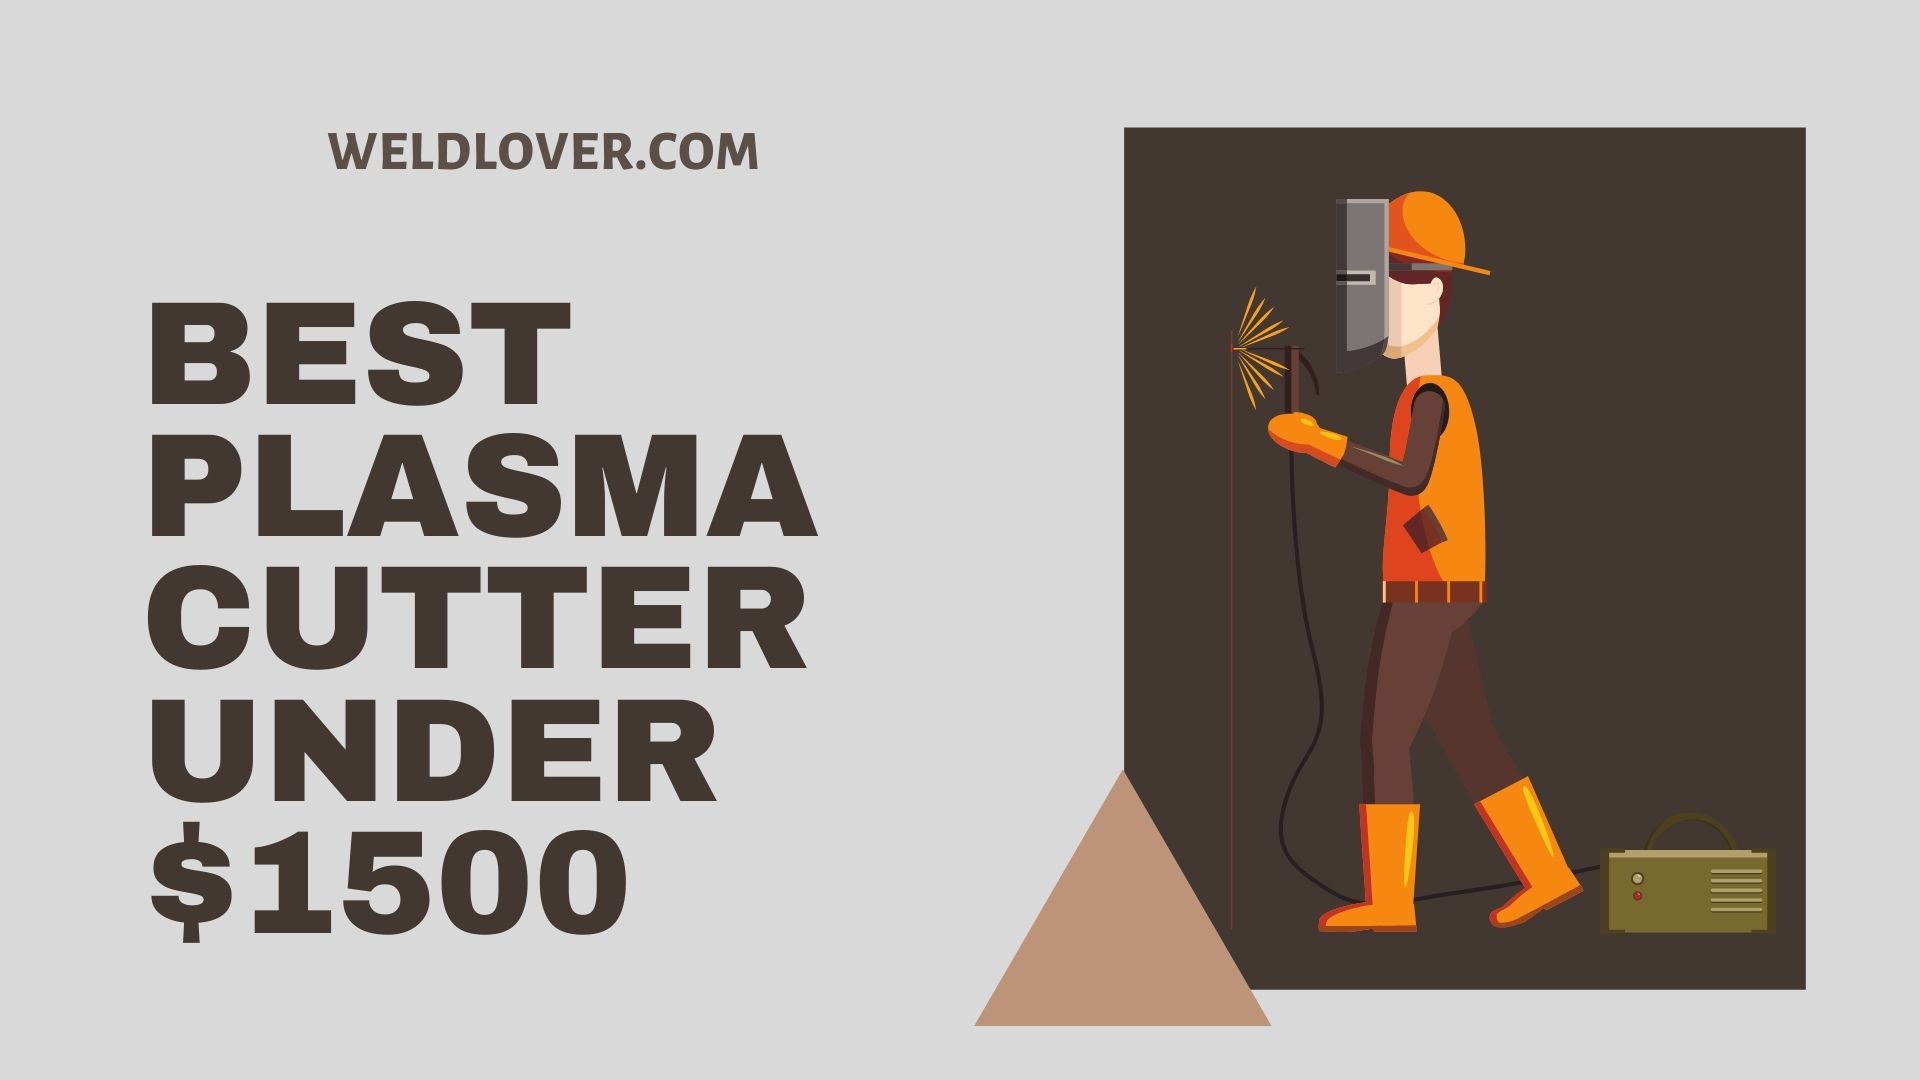 Best plasma cutter under $1500